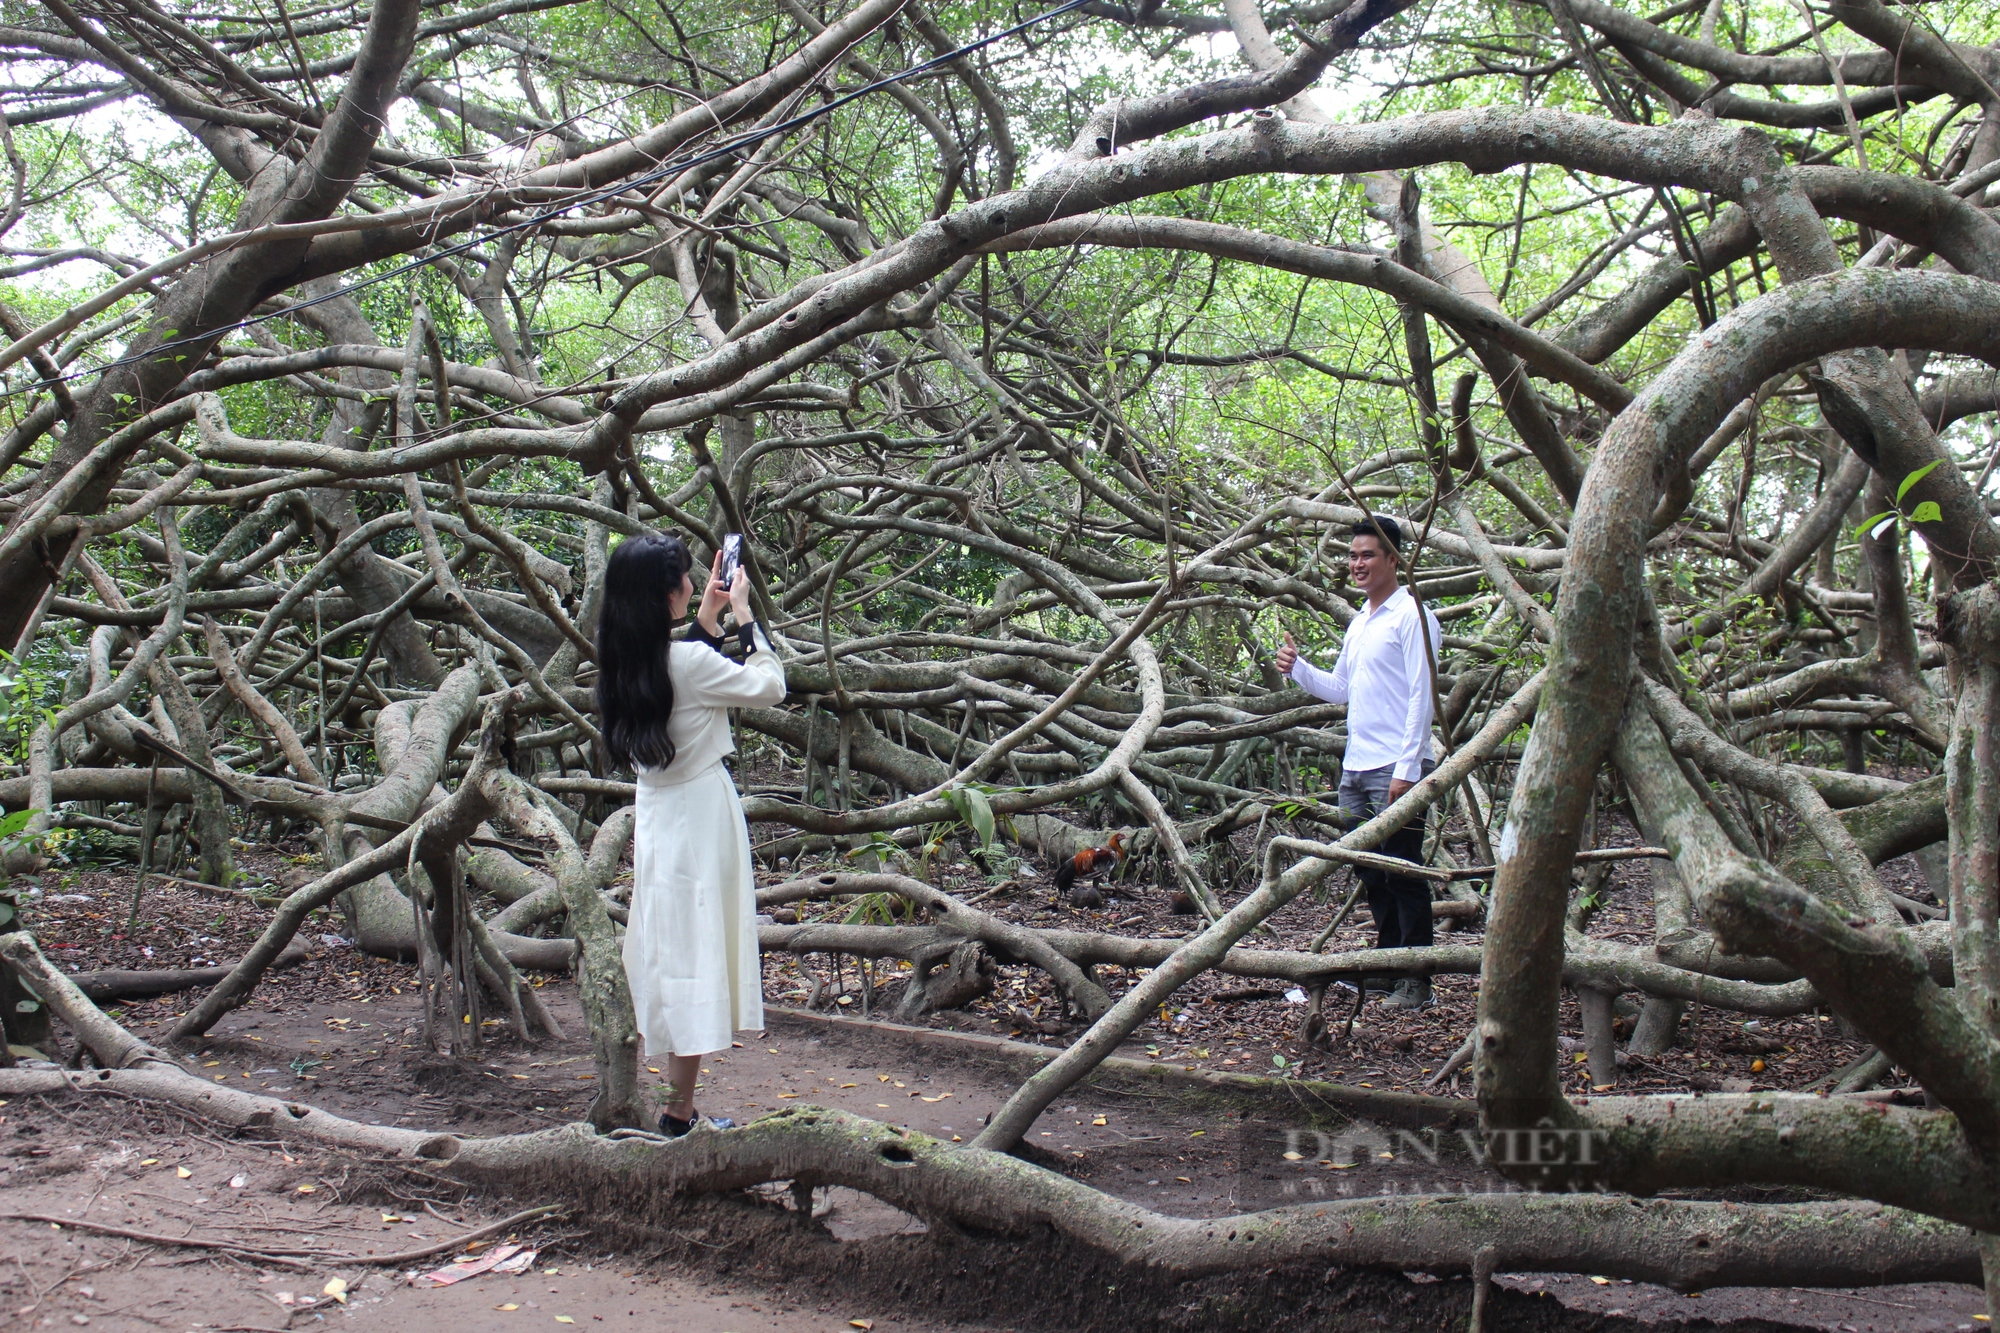 Choáng ngợp với cây Giàn Gừa hơn 200 năm tuổi, được công nhận là cây di sản Việt Nam - Ảnh 3.